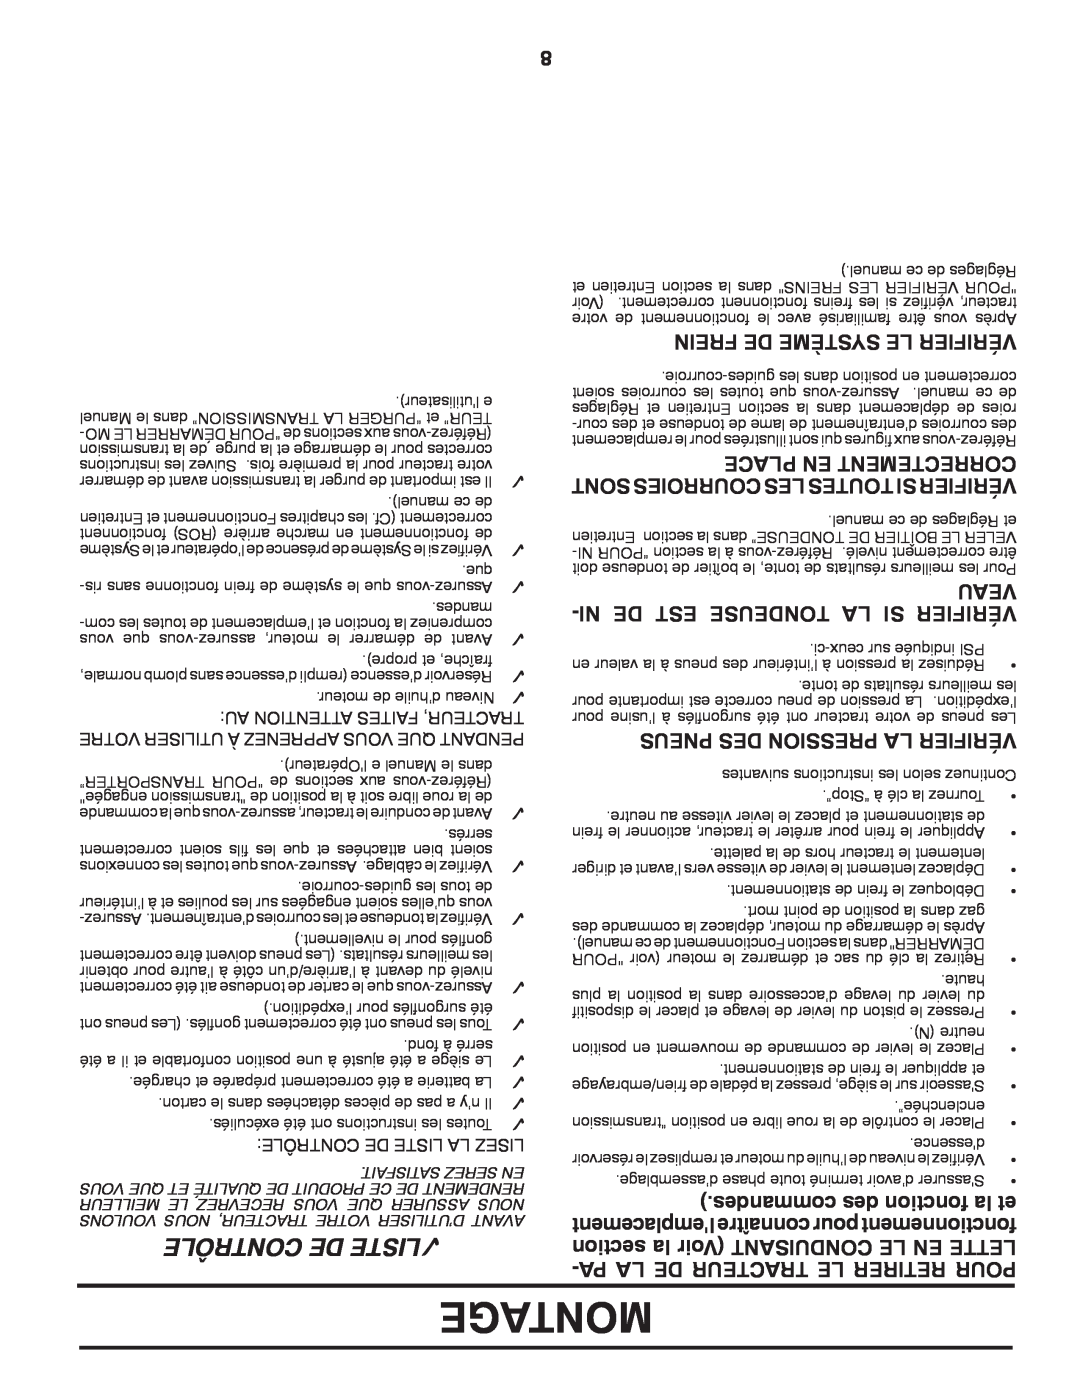 Poulan 418791 manual Montage, Contrôle De Liste, Ni De Est Tondeuse La Si Vérifier, desmancom des tionfonc la et, Veau 